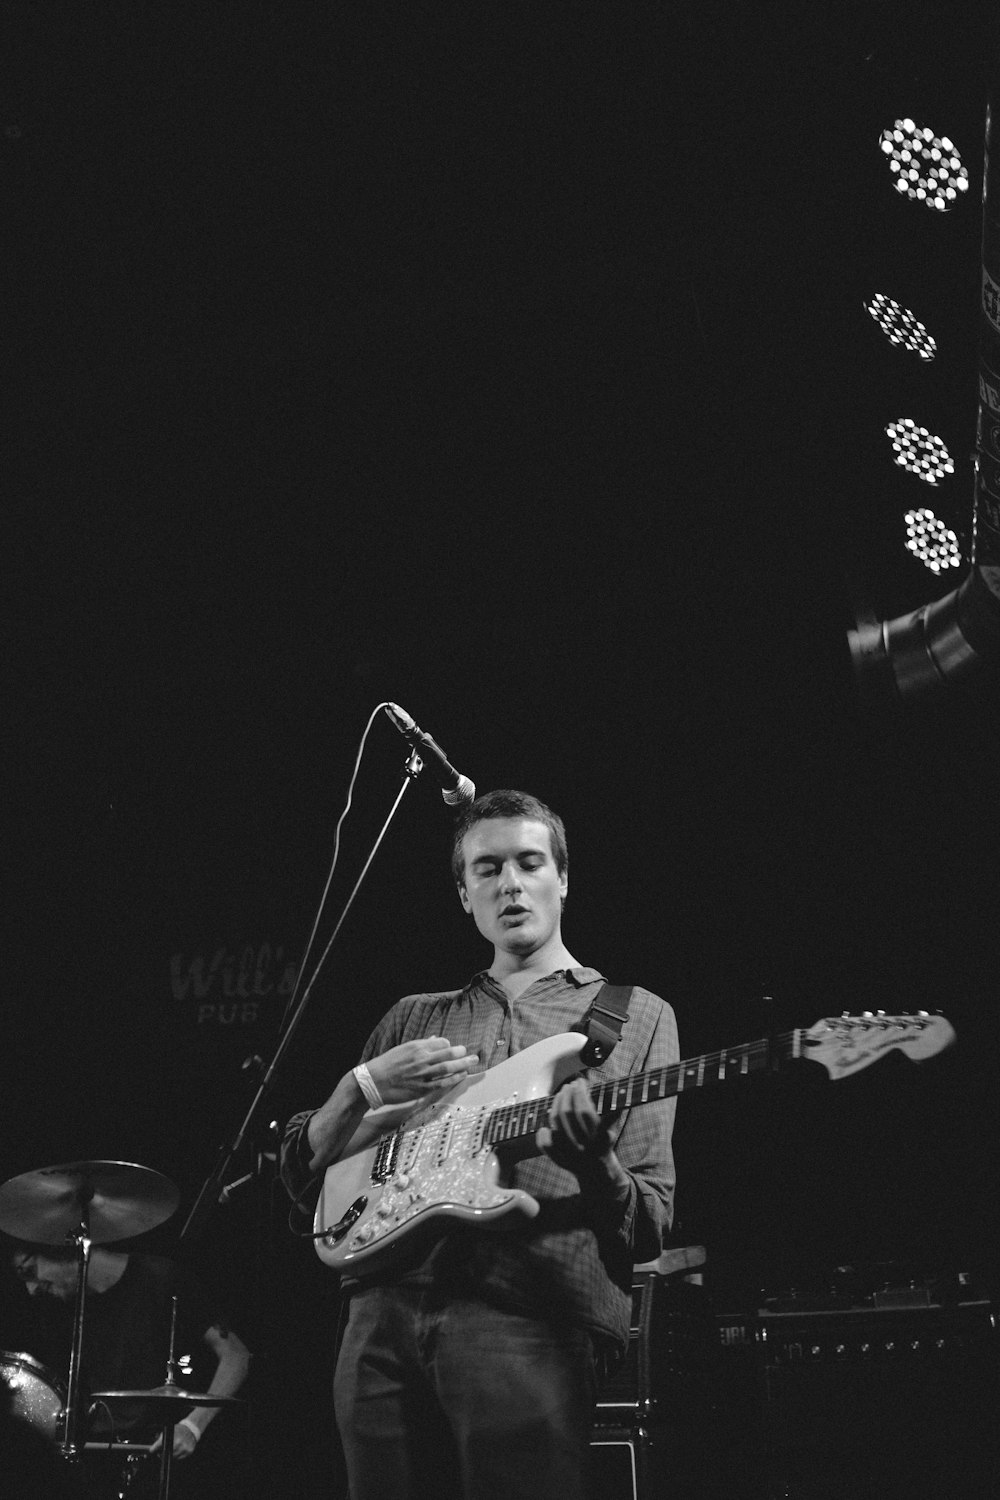 Fotografía en escala de grises de un hombre tocando la guitarra en el escenario